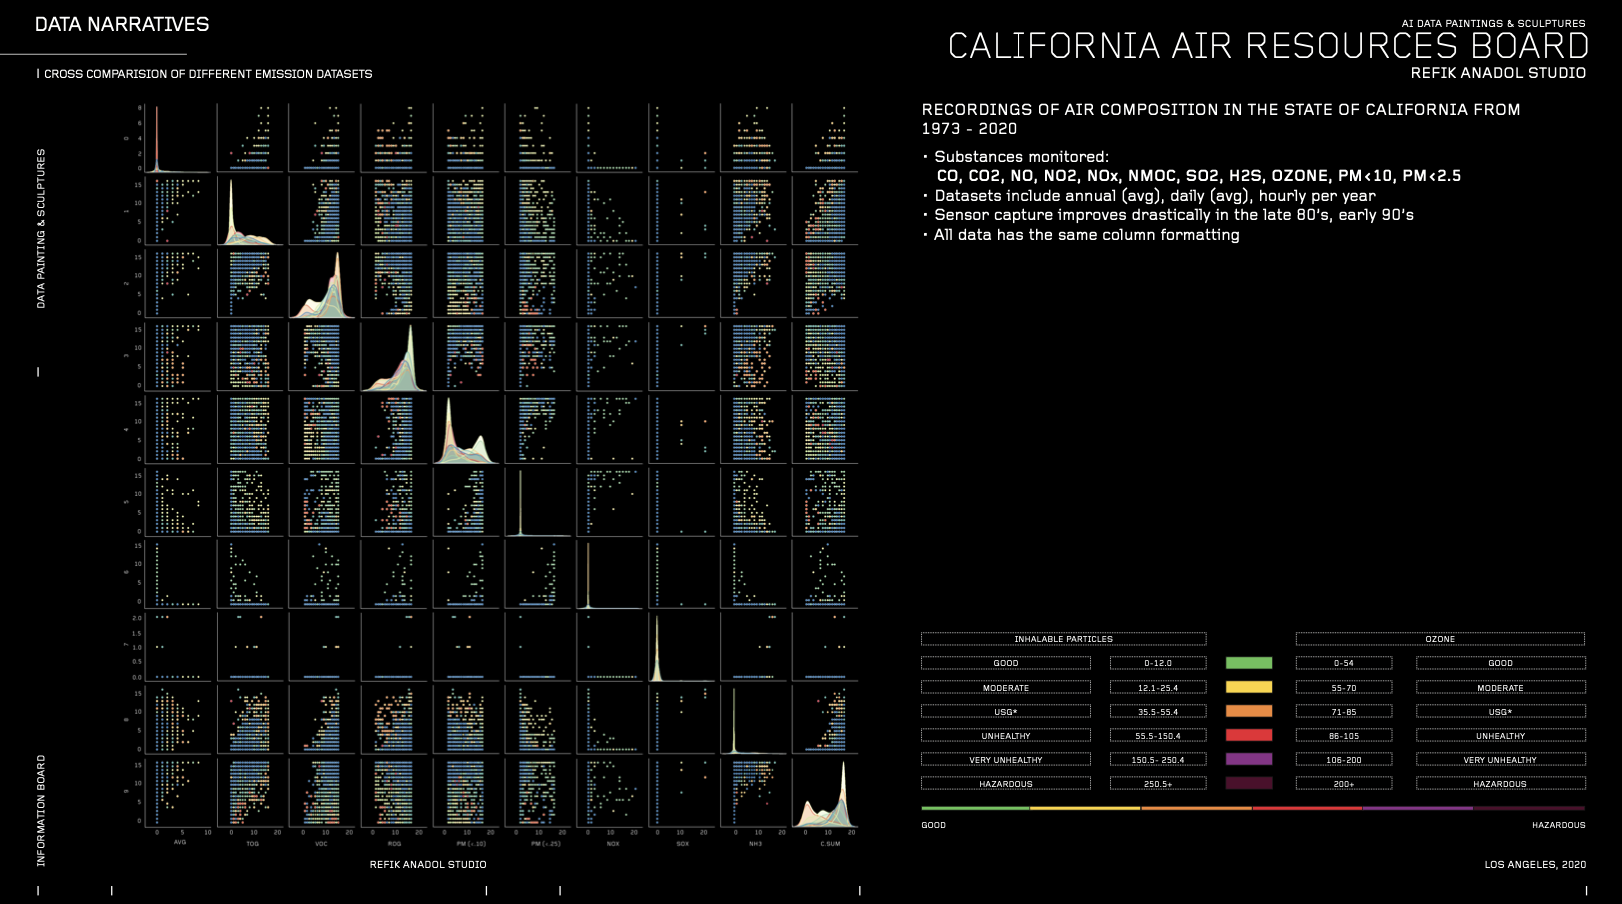 California Air: AI Data Paintings